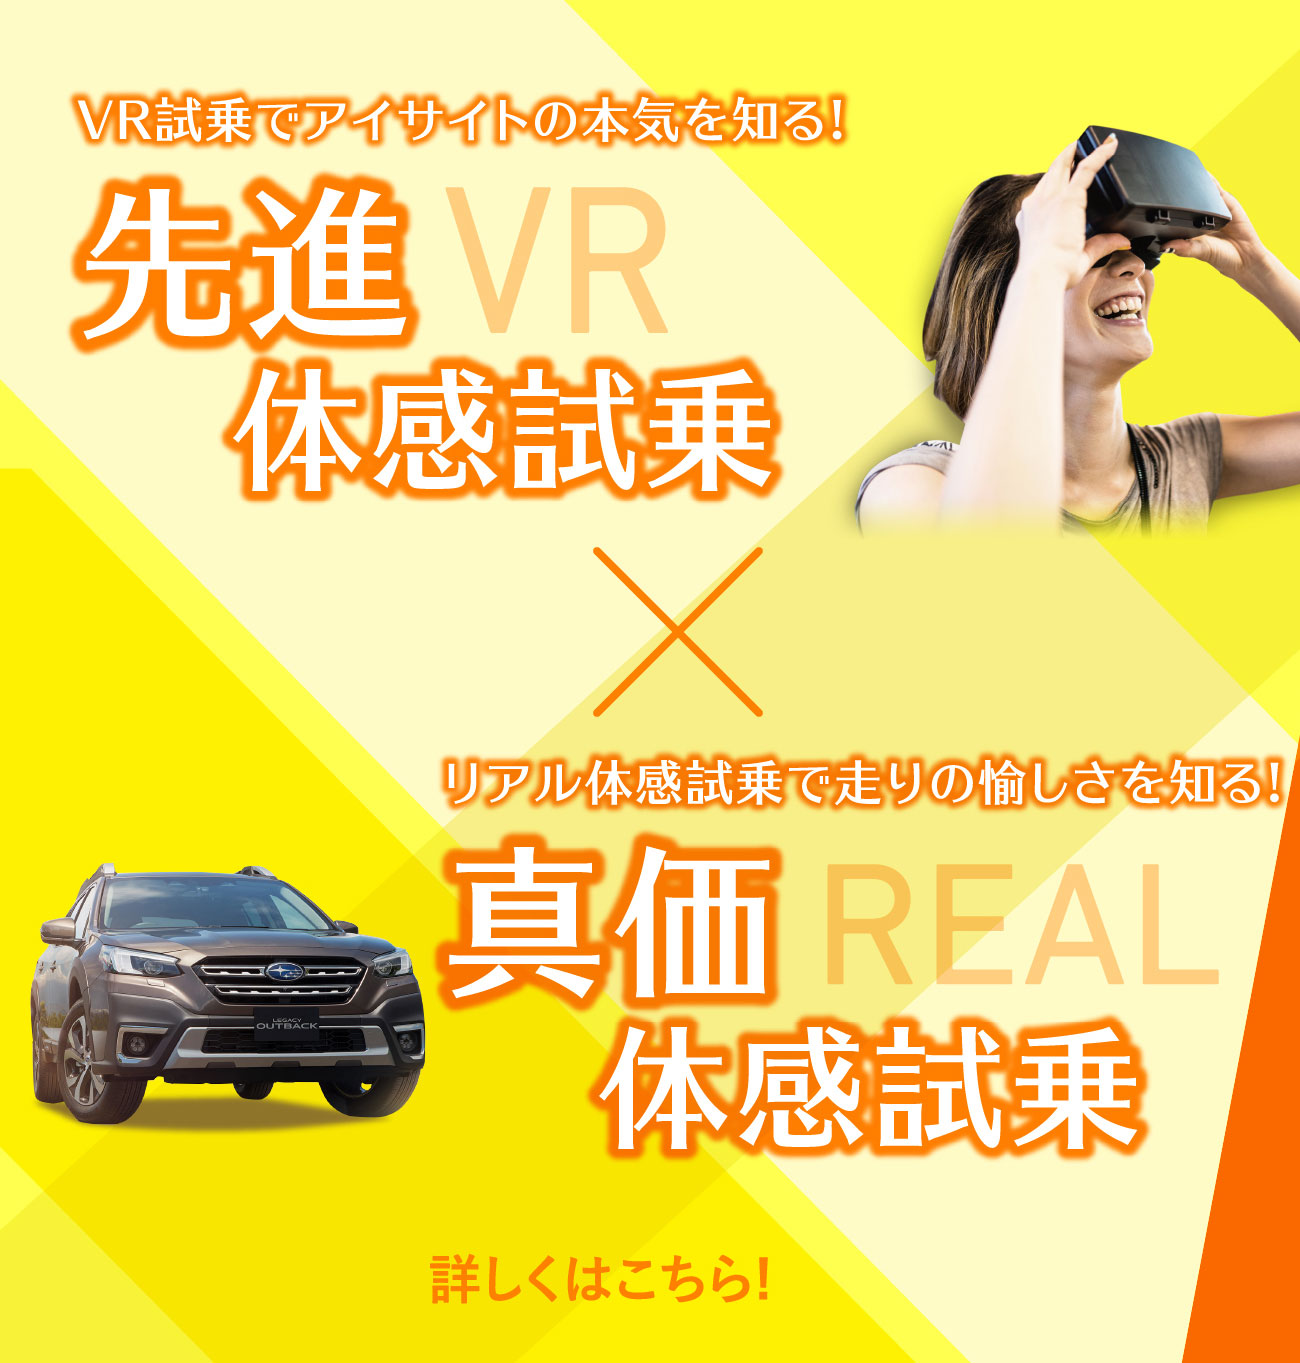 VR試乗でアイサイトの本気を知る!先進体感試乗REAL ✕ リアル体感試乗で走りの愉しさを知る!真価体感試乗VR 詳しくはこちら！